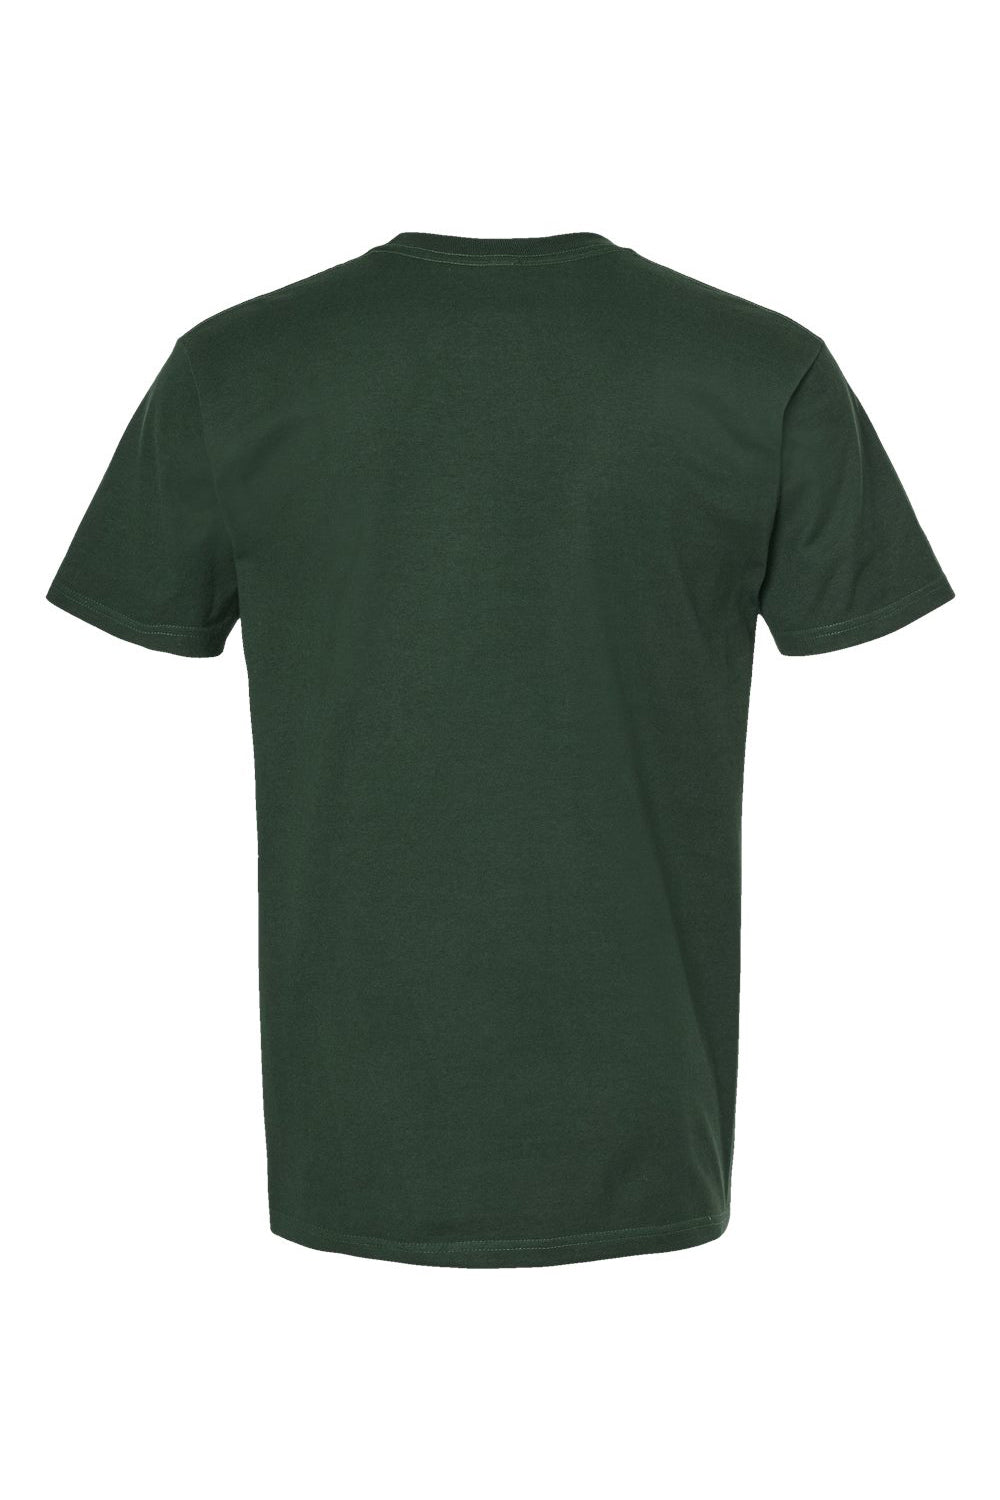 Tultex 290 Mens Jersey Short Sleeve Crewneck T-Shirt Forest Green Flat Back